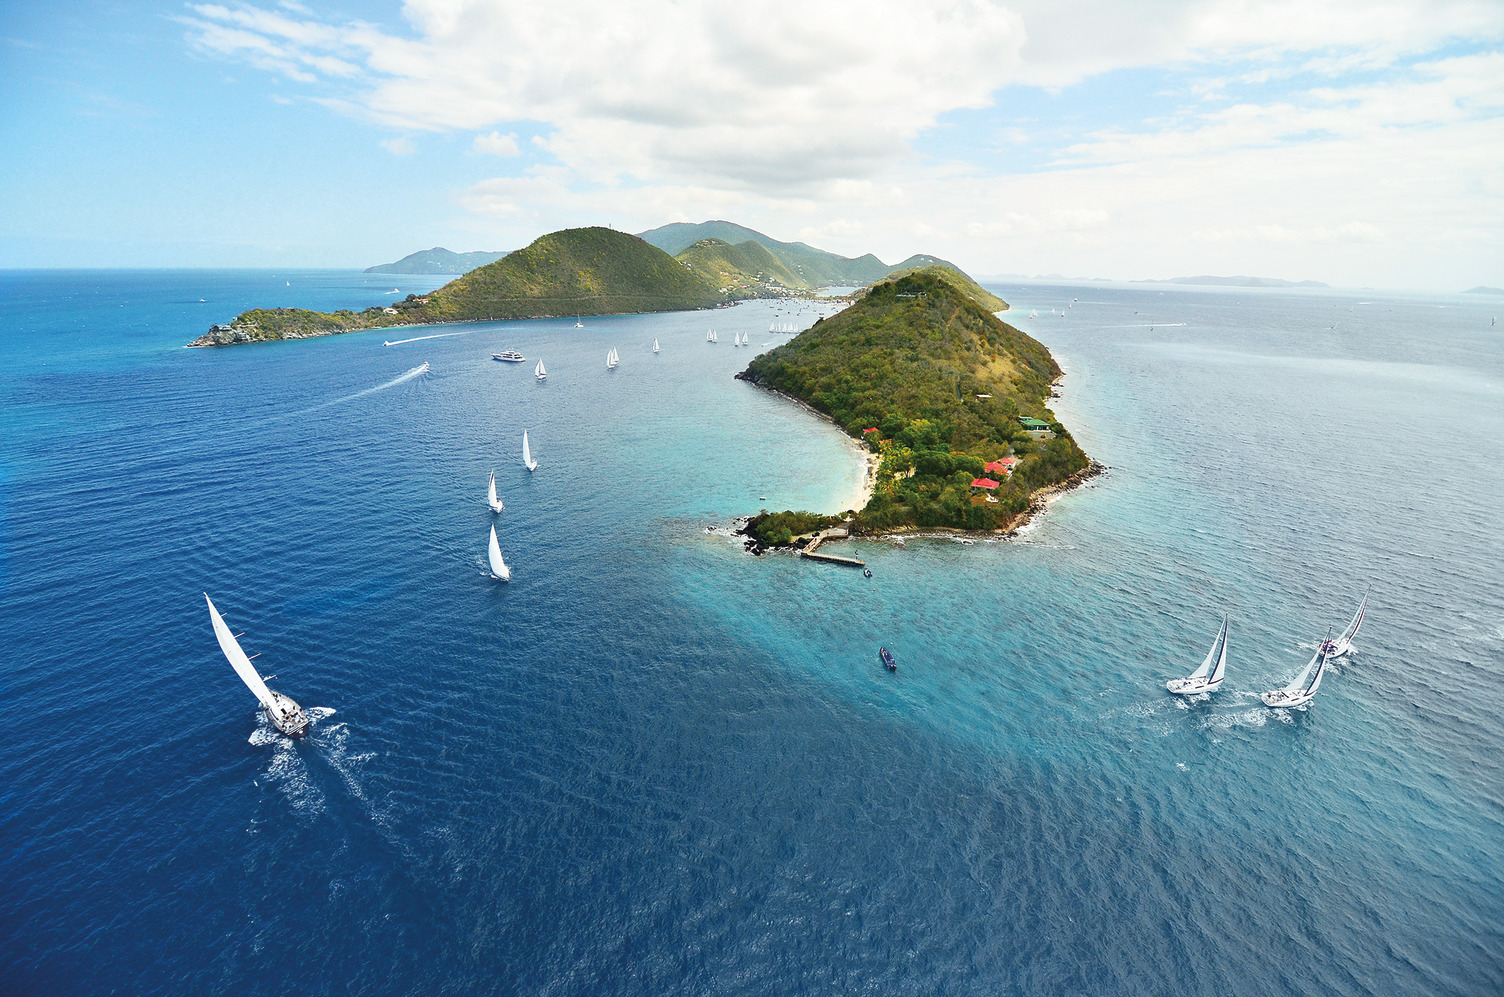 Le Isole Vergini Britanniche celebrano la 50° edizione della regata più emozionante dei Caraibi